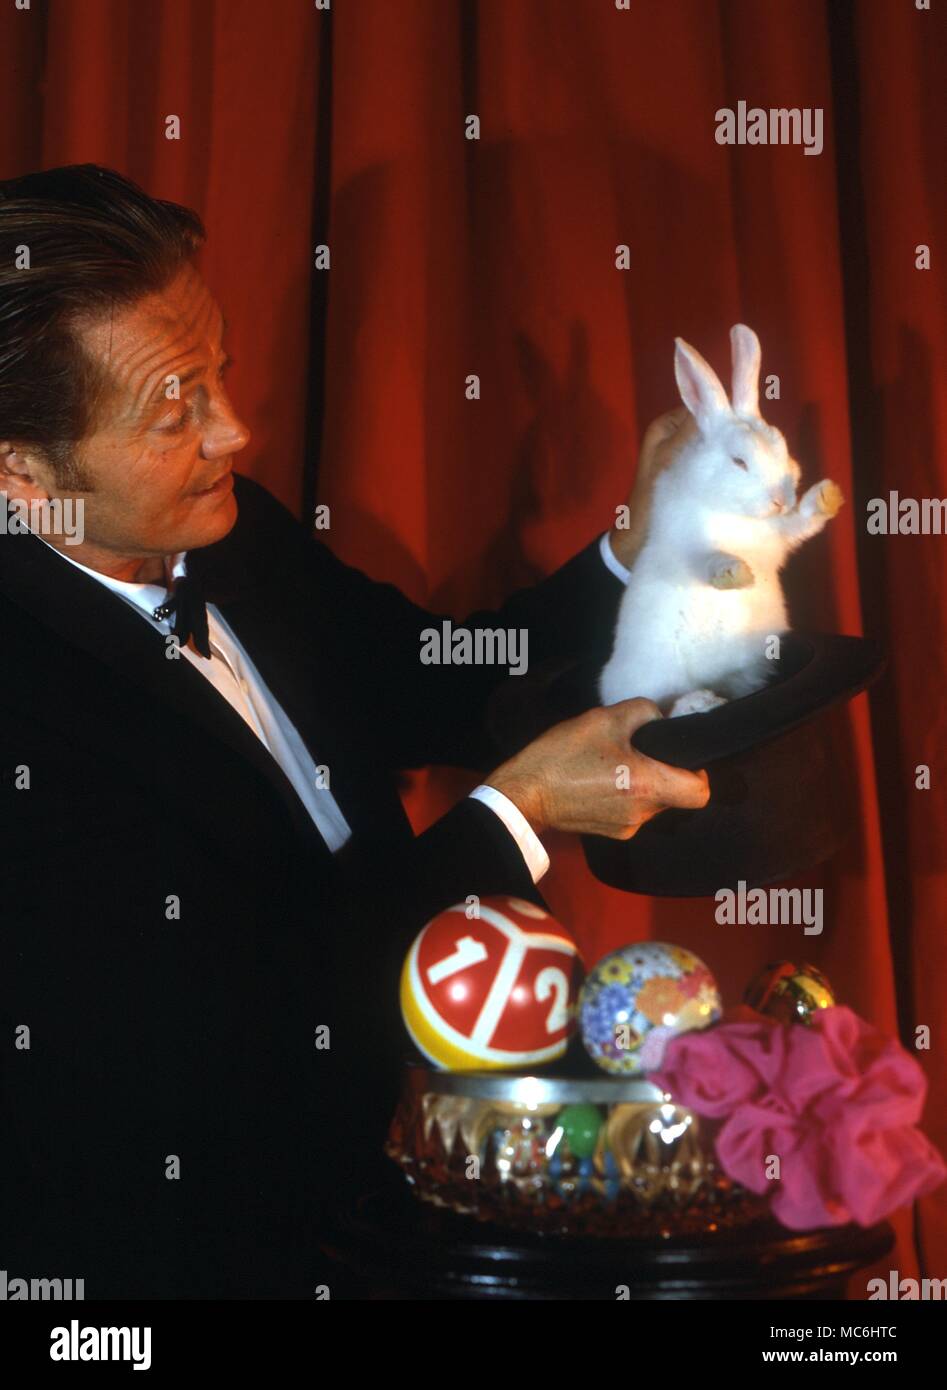 Il mago solleva un coniglio bianco da un cappello che ha appena dimostrato di essere vuoto. Foto Stock